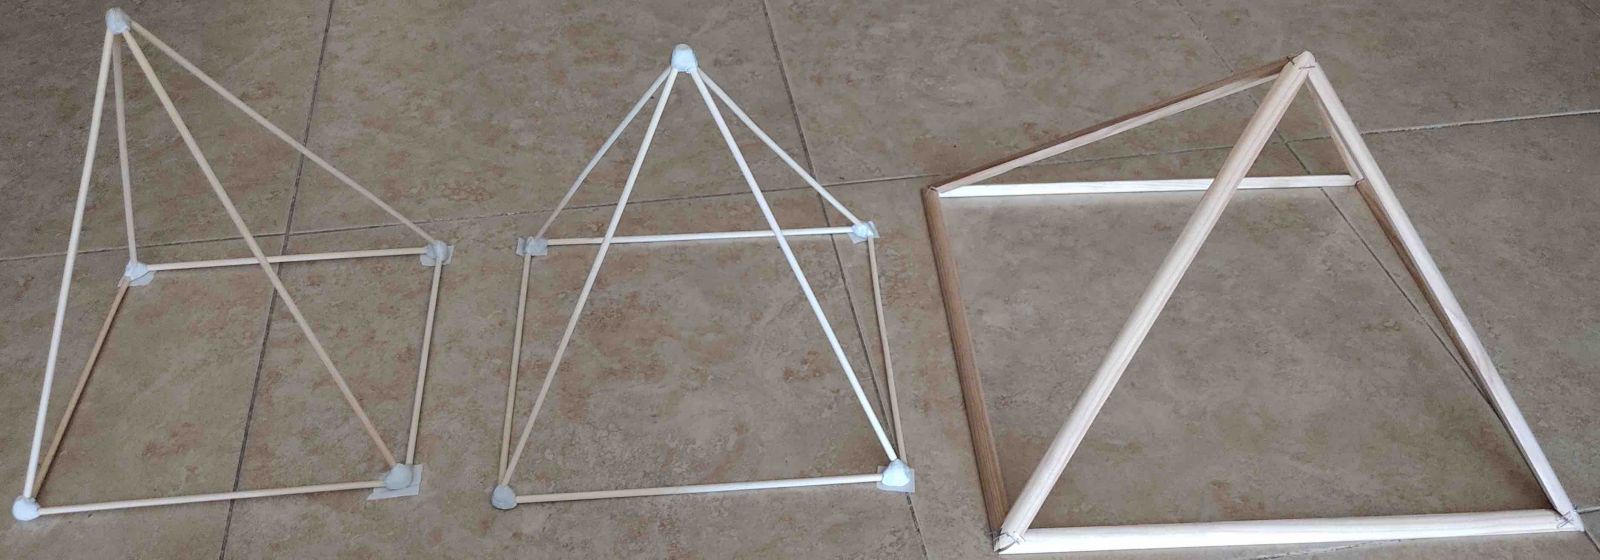 maquetas de la gran piramide y dos piramides pitagoricas